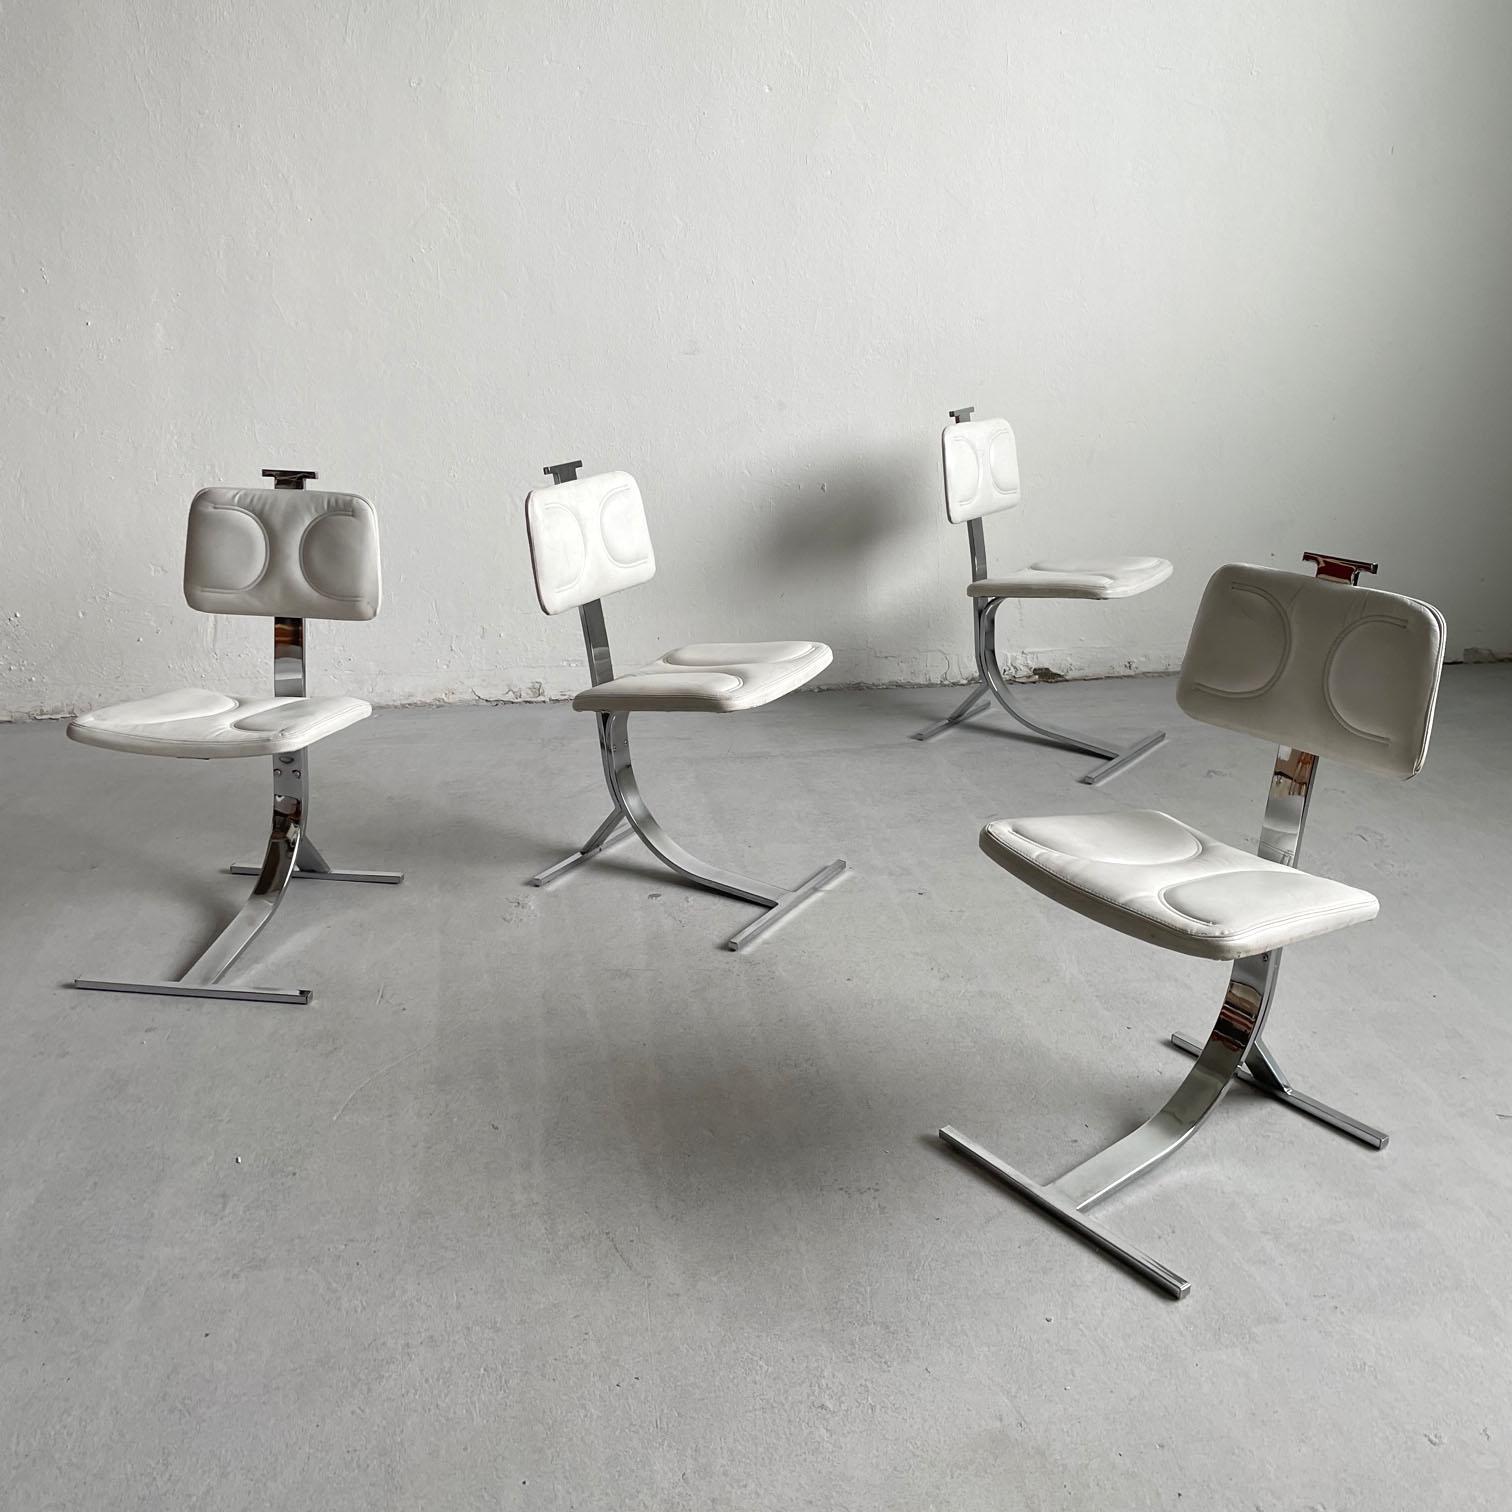 Ensemble de 4 superbes chaises de salle à manger sculpturales des années 1970

Les chaises sont dotées d'un cadre très solide avec une forme incurvée en porte-à-faux en acier galvanisé.  Les sièges et les dossiers sont recouverts d'un similicuir